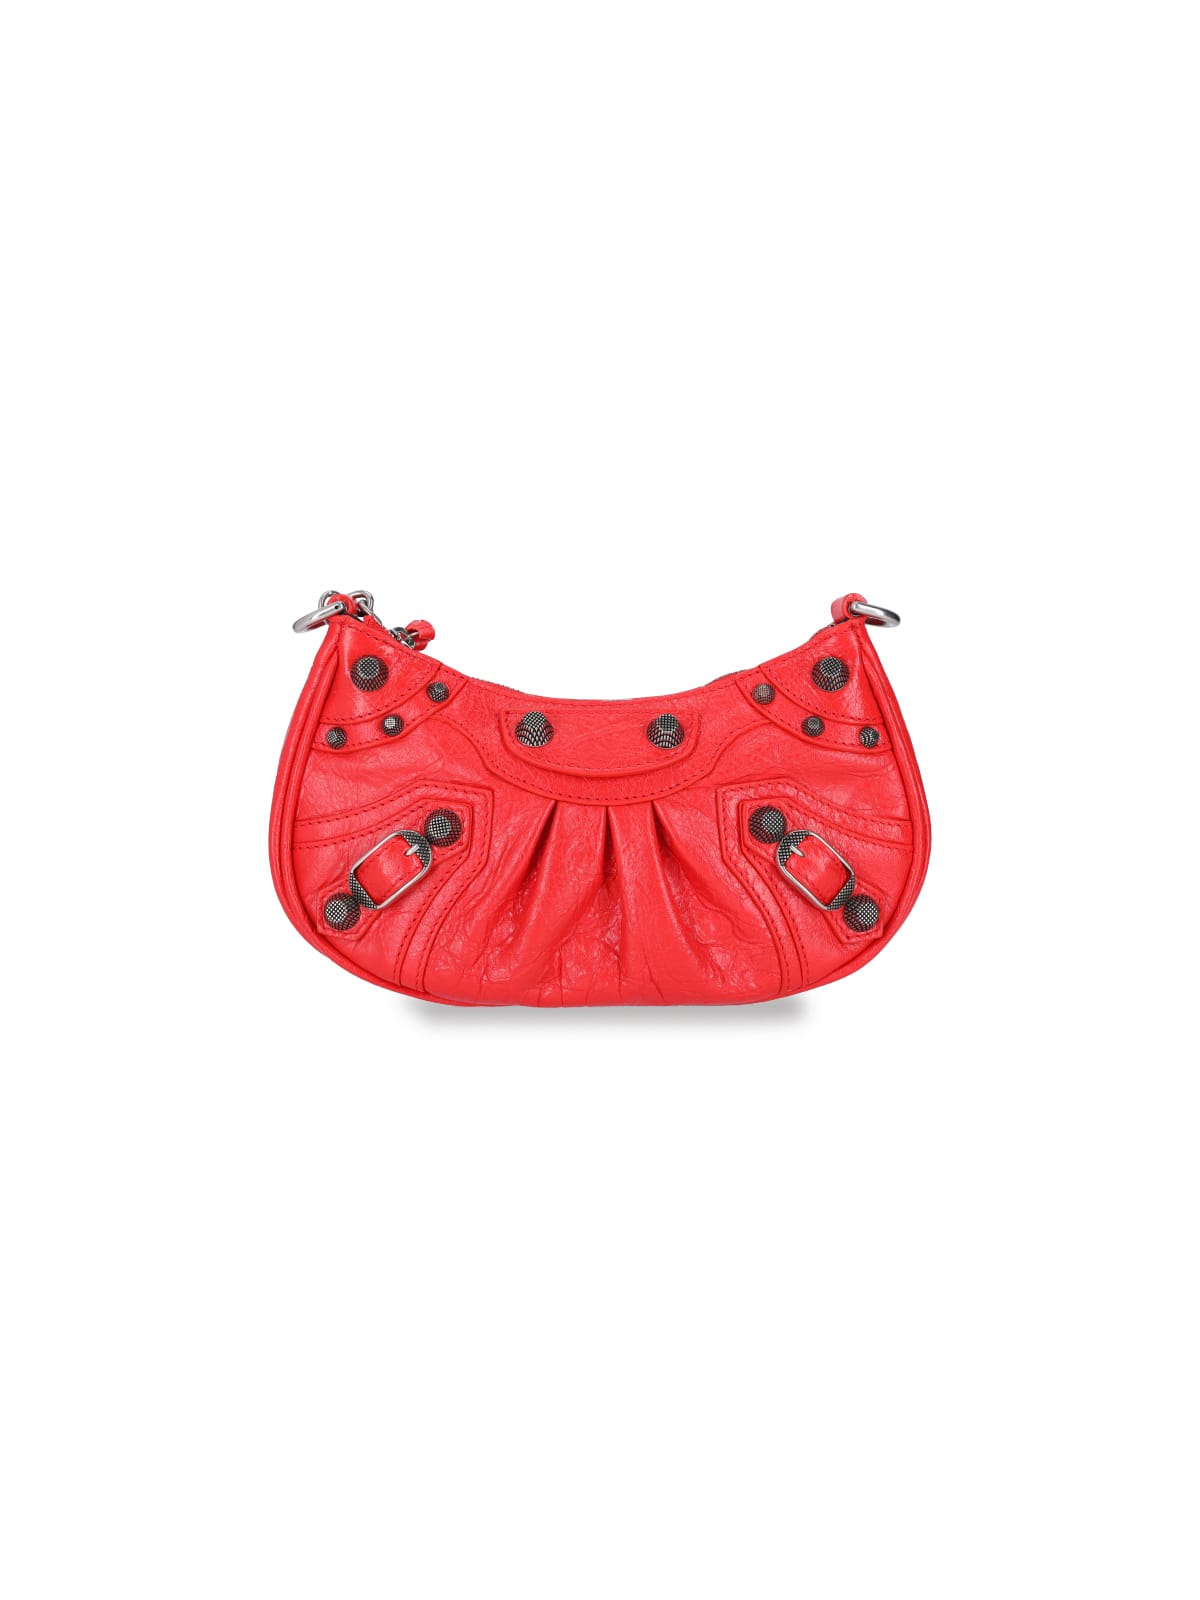 Balenciaga Red Handbags  ShopStyle